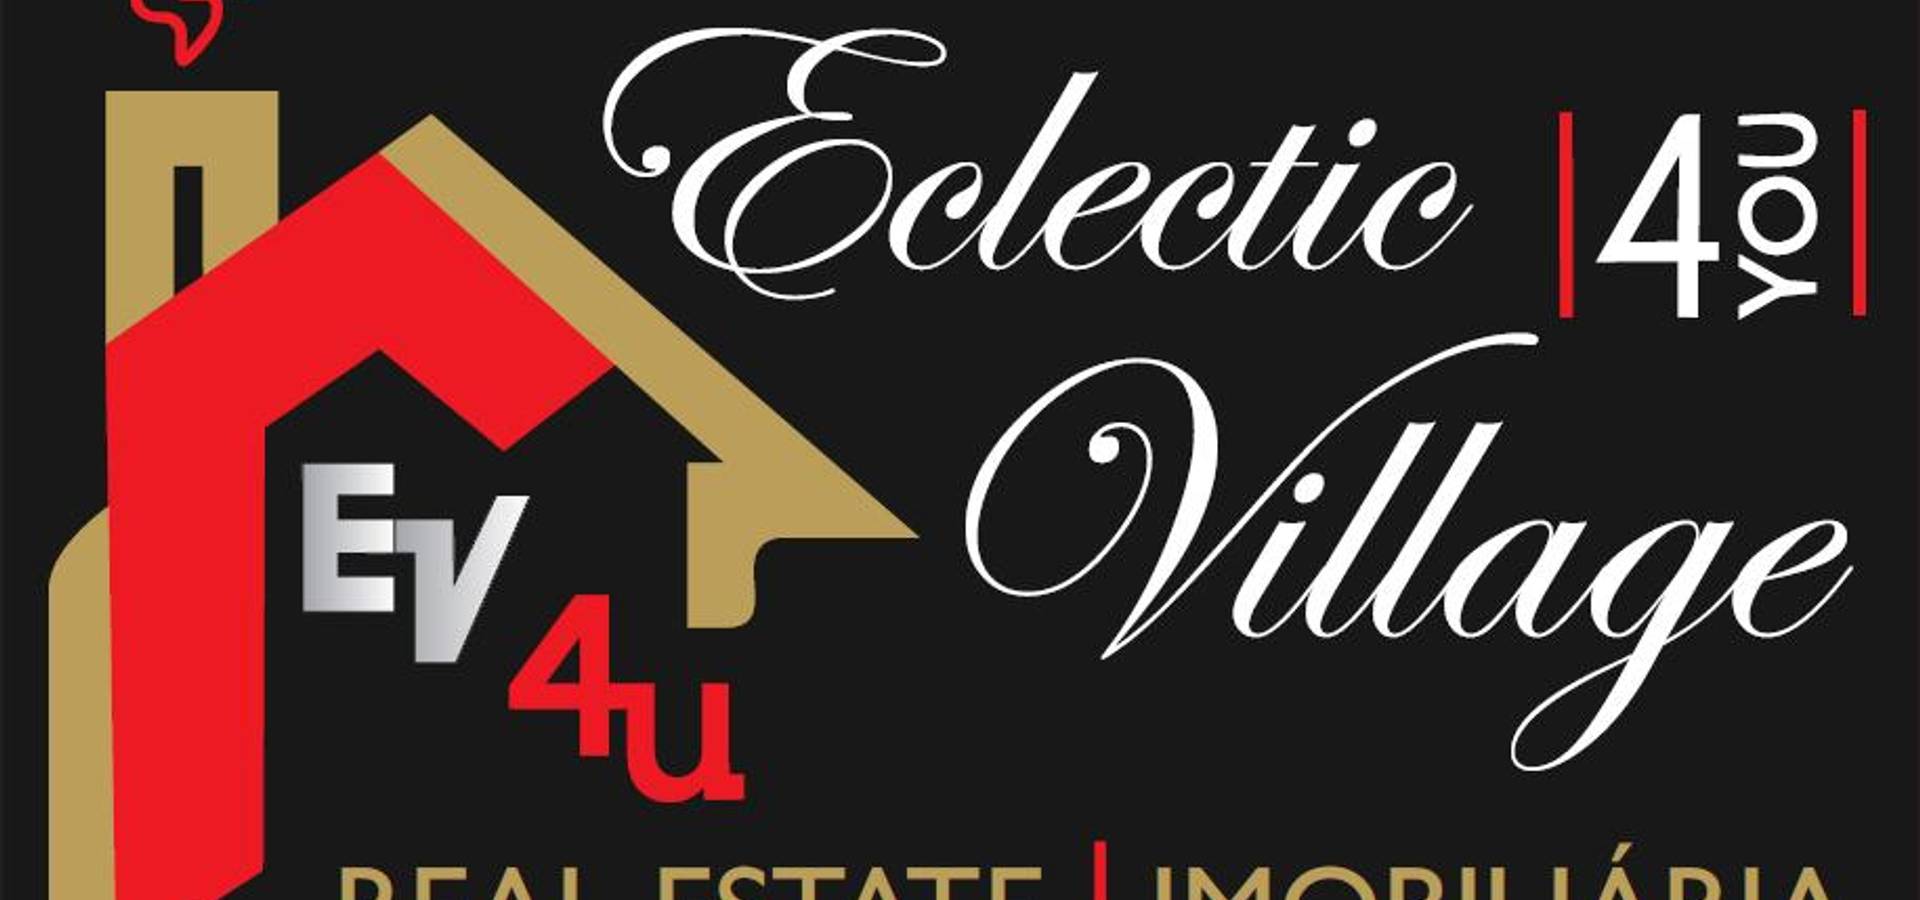 EclecticVillage—Mediação Imobiliária, Lda